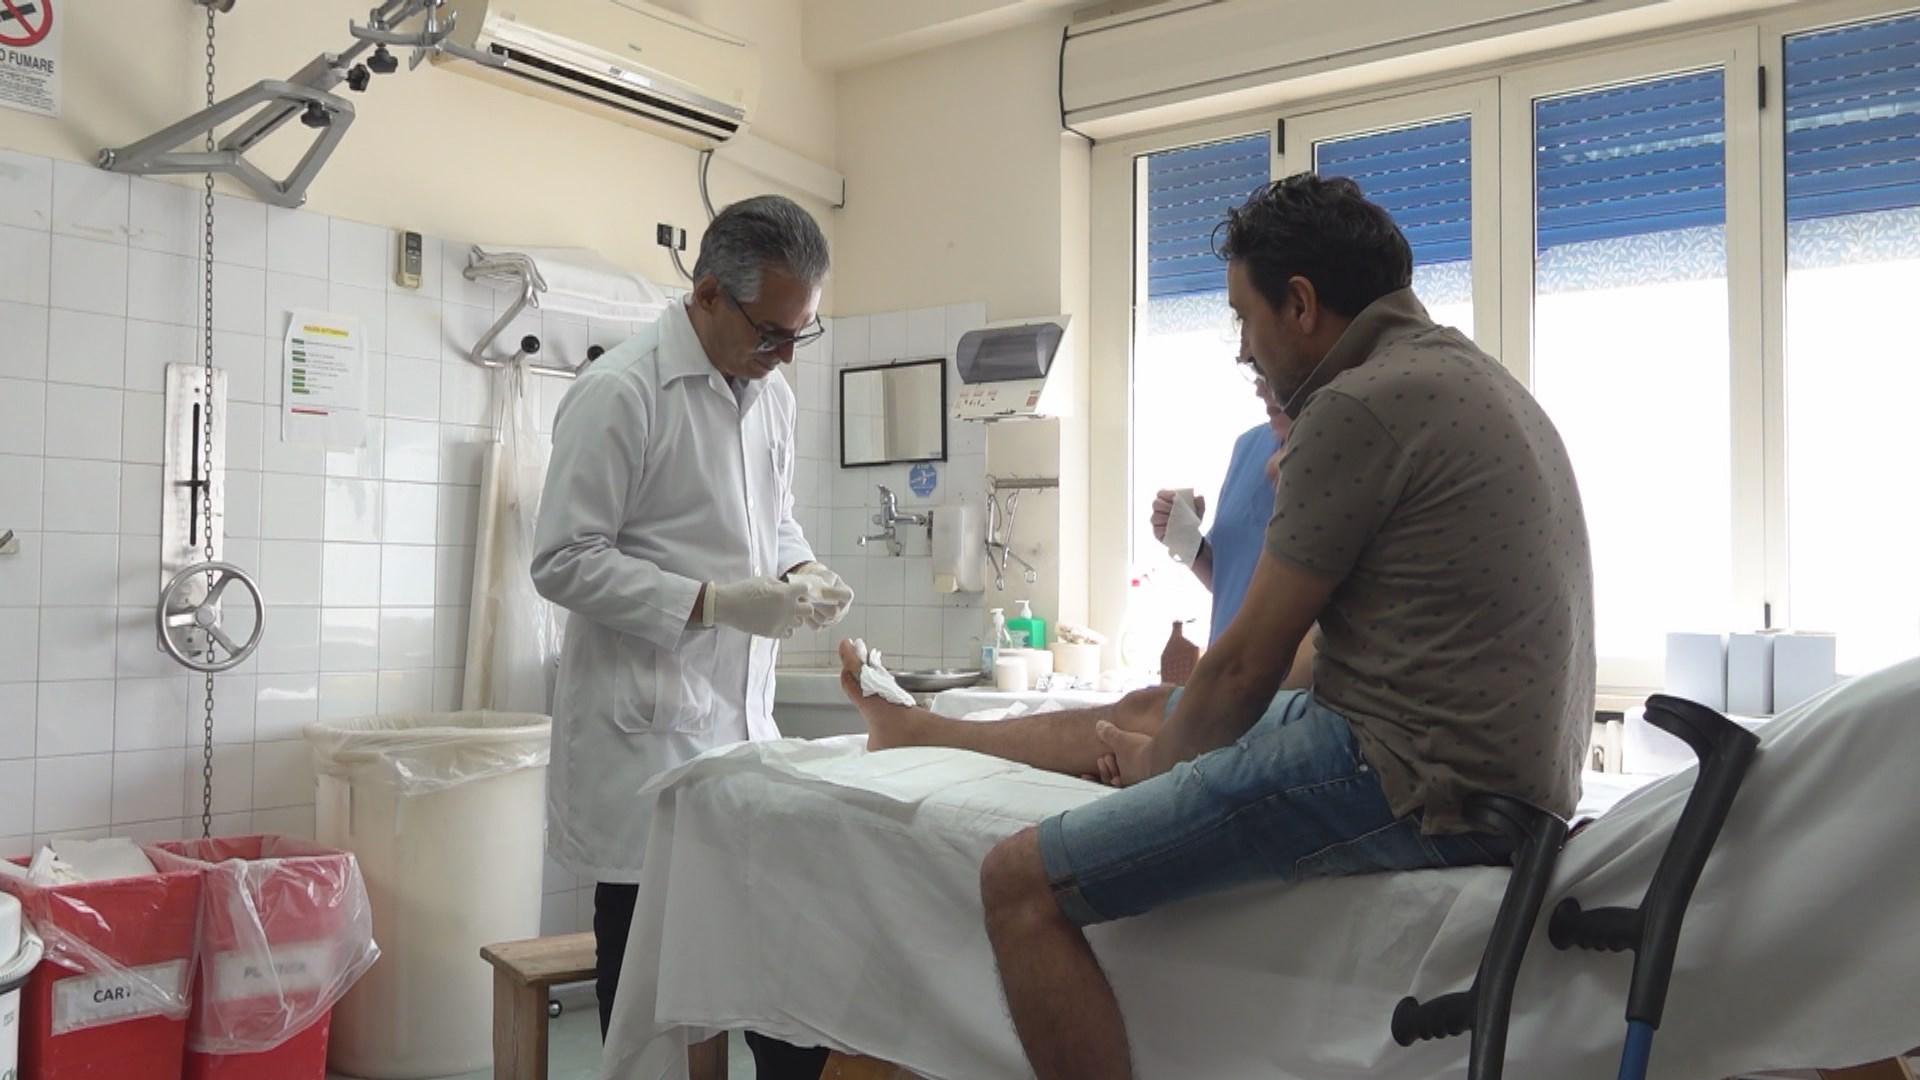 Après six mois de pratique à l'hôpital de Polistena l'orthopédiste cubain Raciel Escalona parle désormais l'italien, alors qu'il n'en connaissait pas un mot à son arrivée. [RTS]